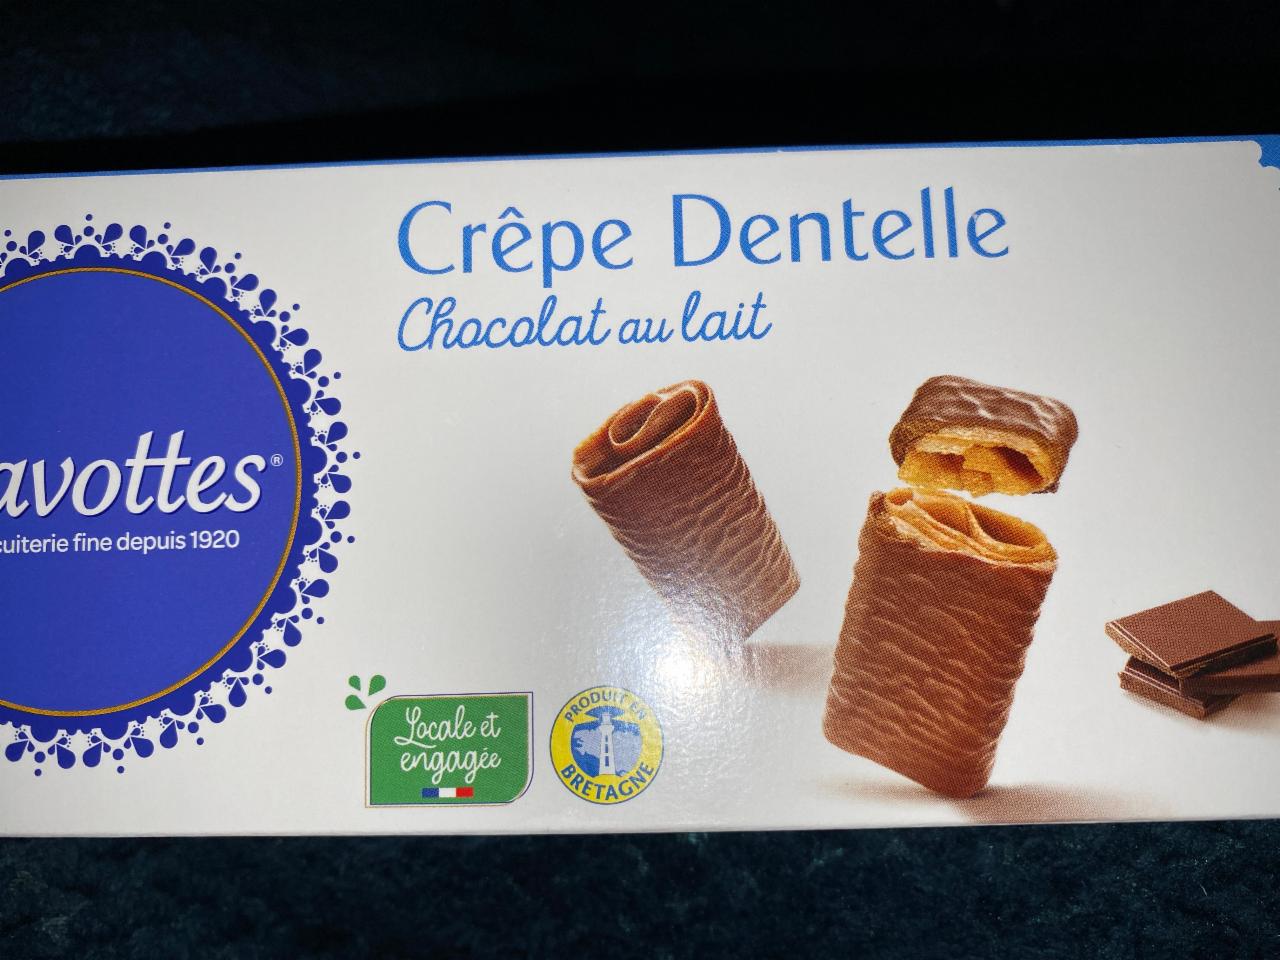 Fotografie - Gavottes crêpe chocolate dentelle chocolat au lait 